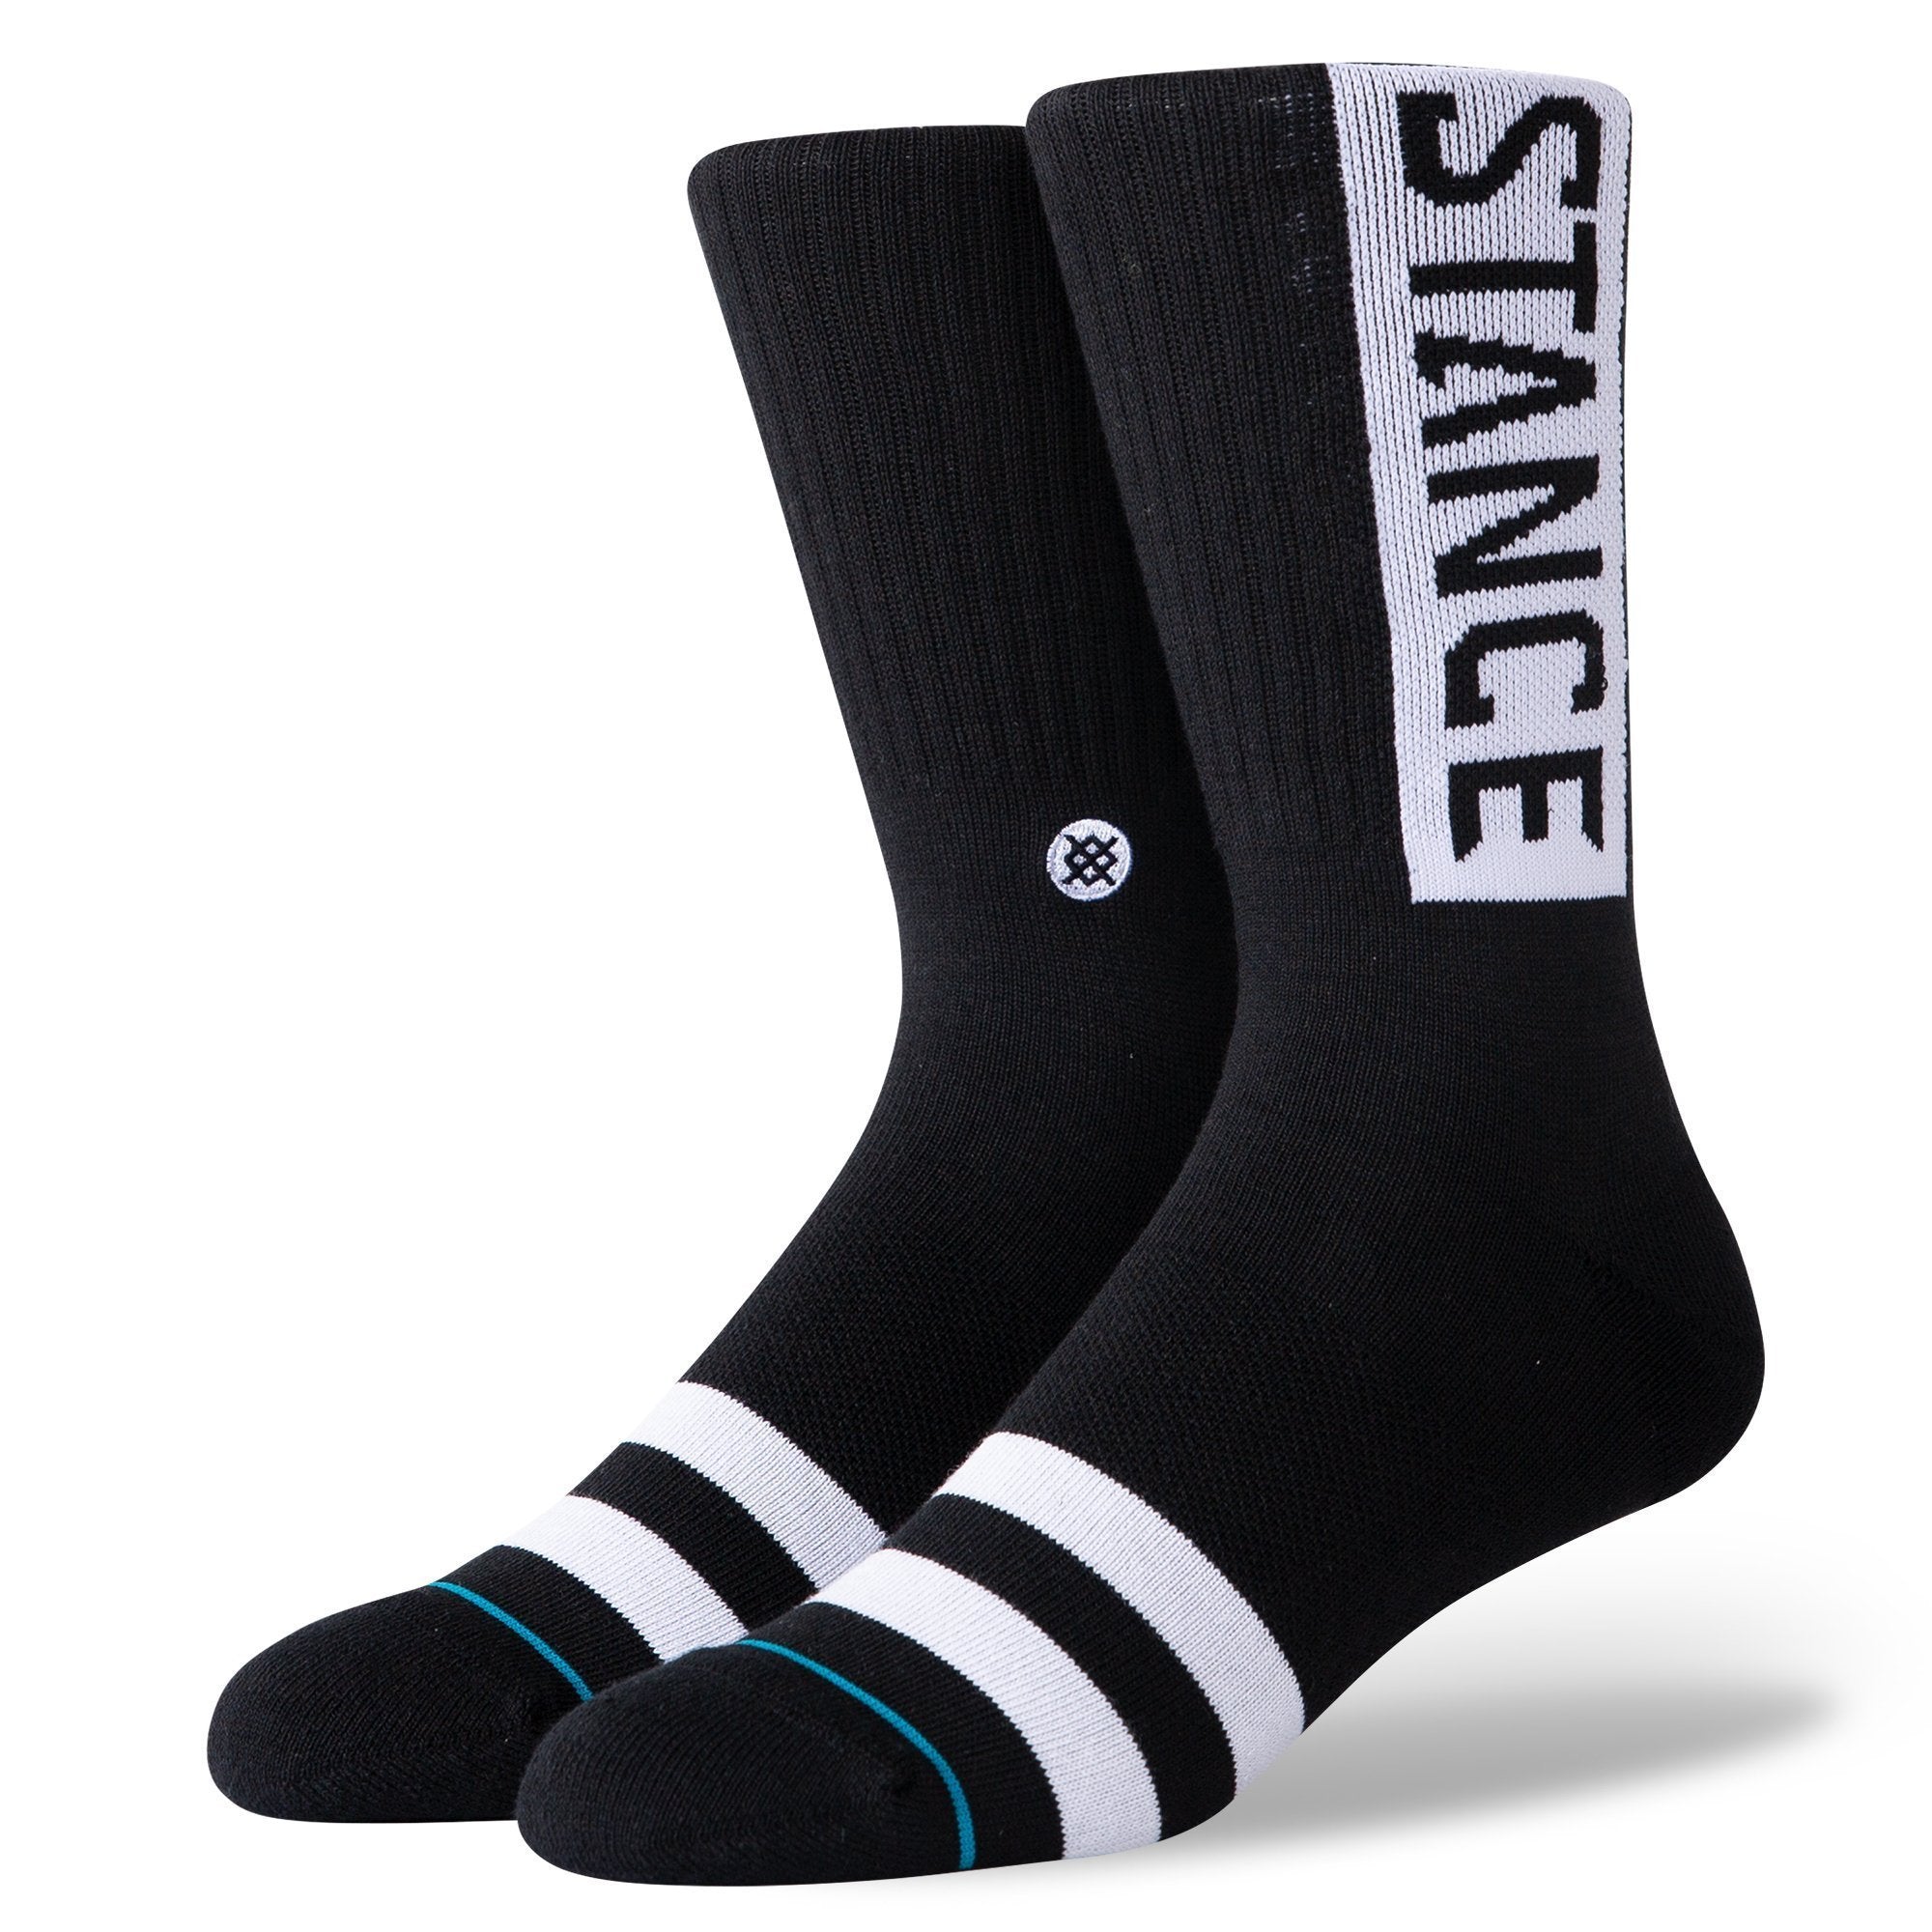 Stance OG Crew Socks - Black